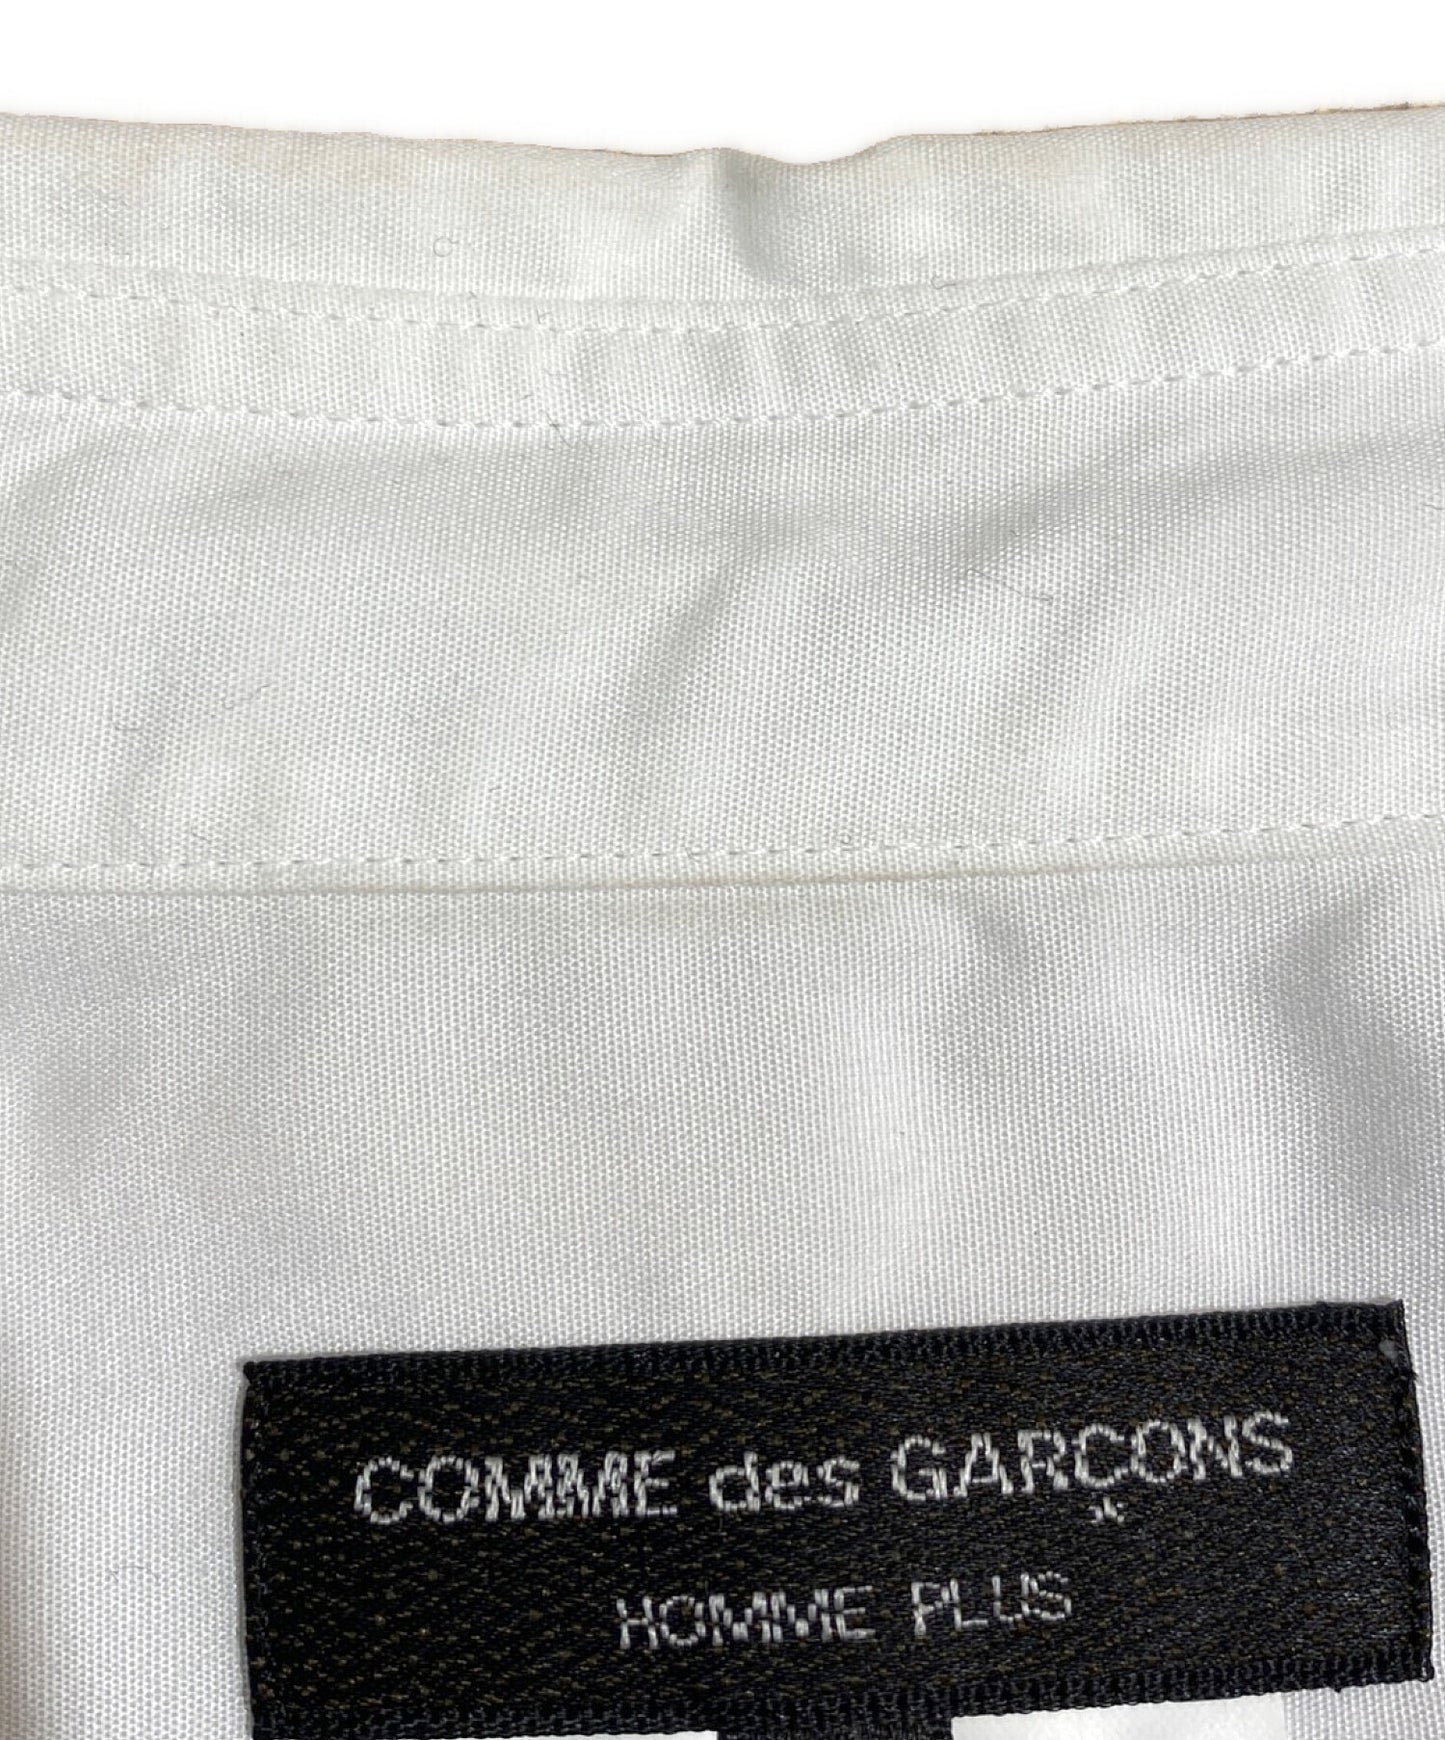 Comme des Garcons Homme Plus 줄무늬 긴 셔츠 AD2022 PK-B019